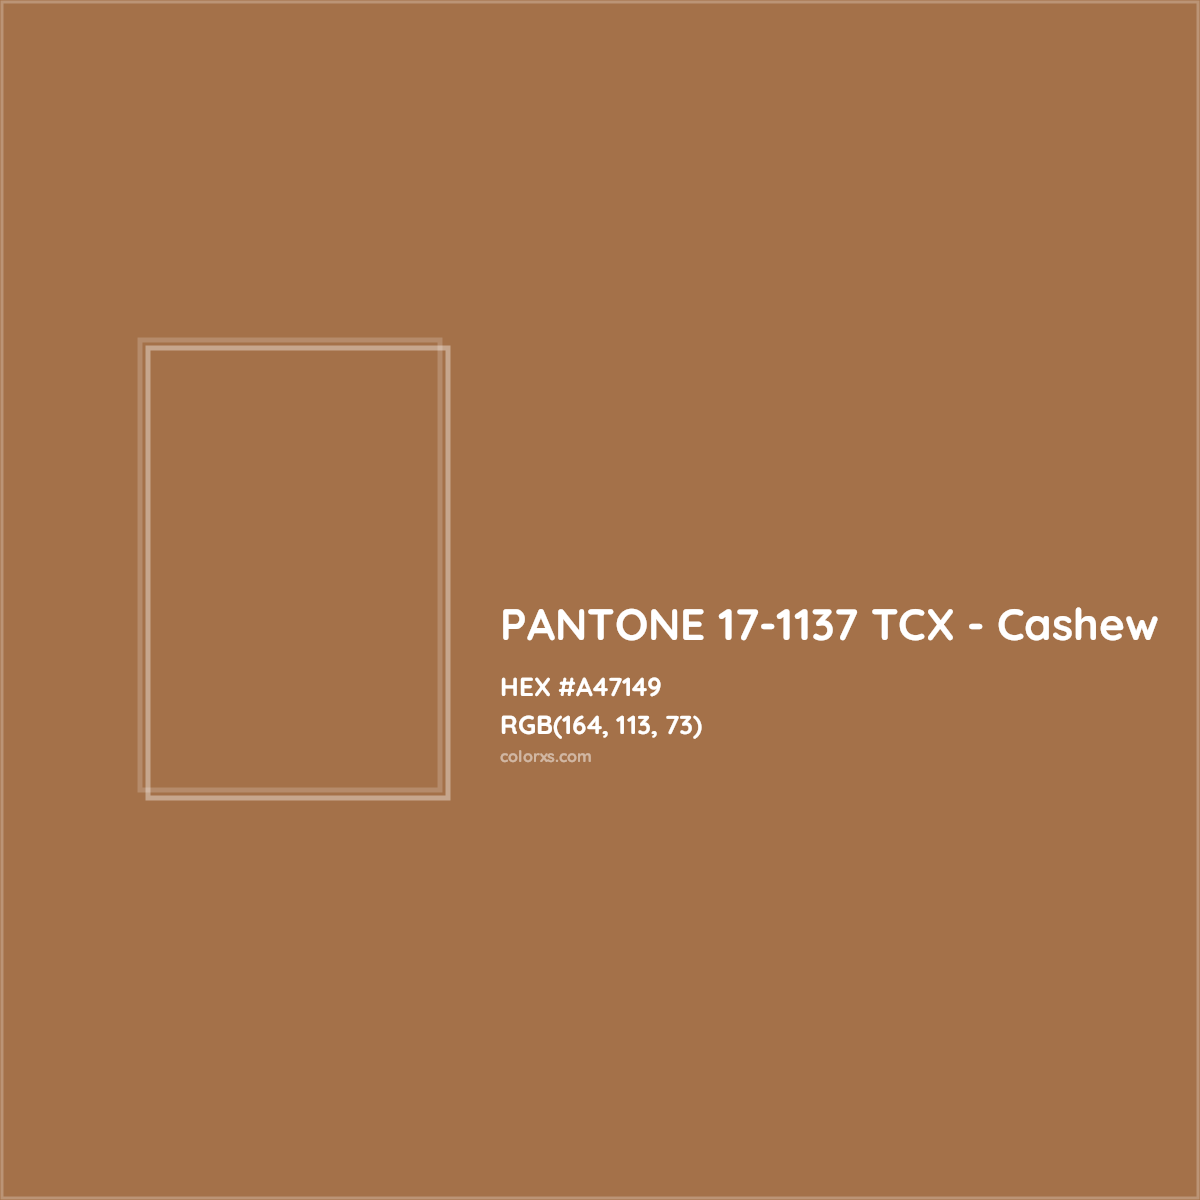 HEX #A47149 PANTONE 17-1137 TCX - Cashew CMS Pantone TCX - Color Code